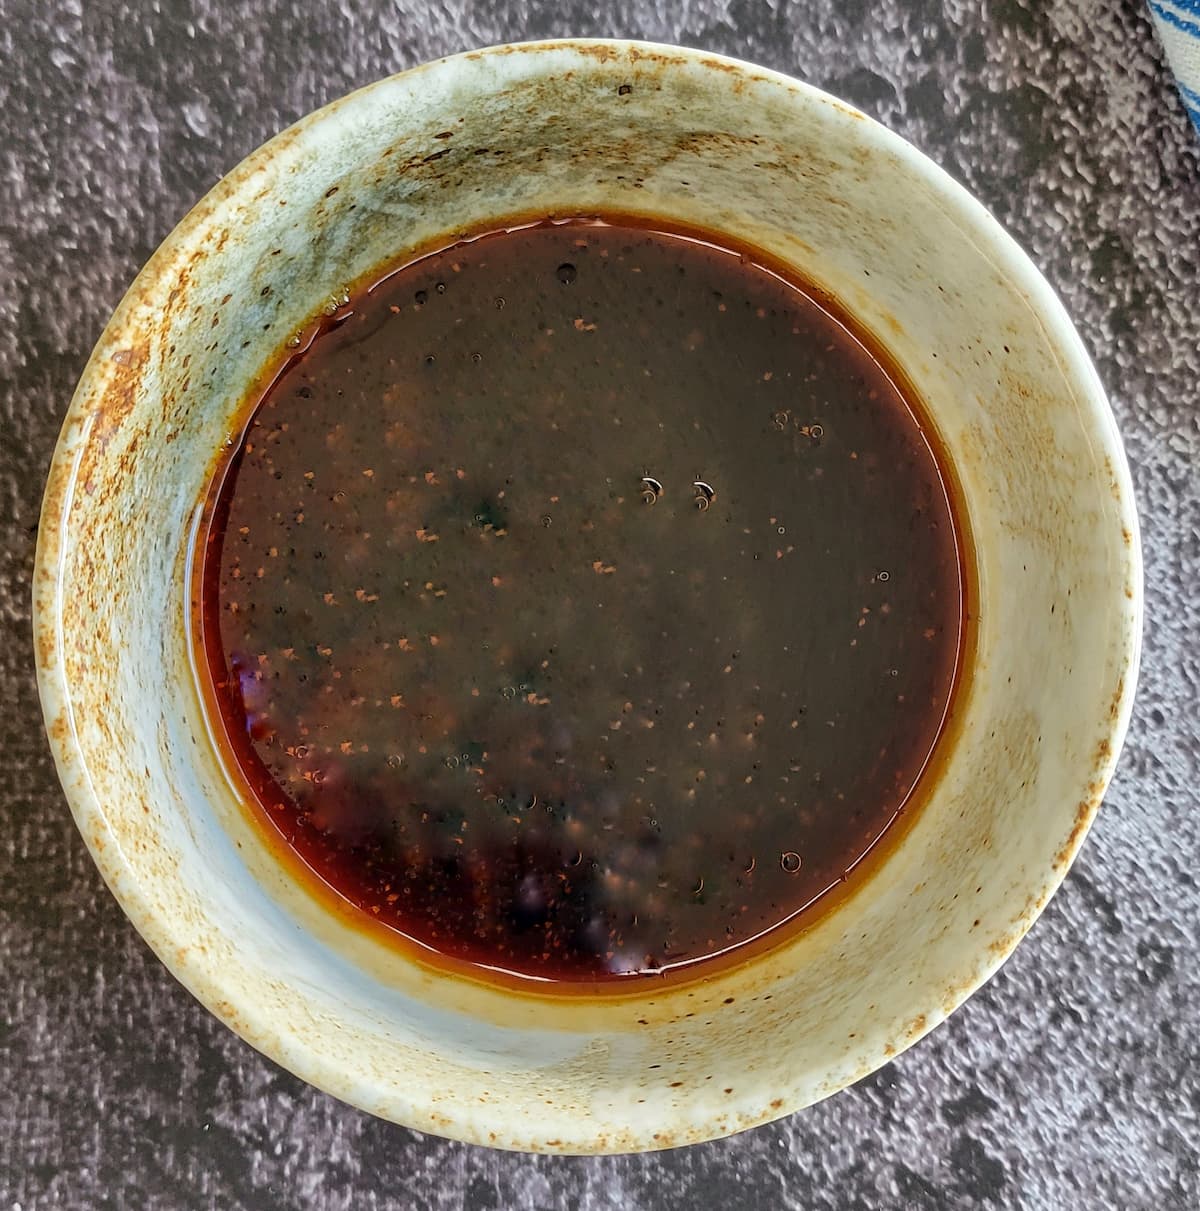 brown liquid in a bowl